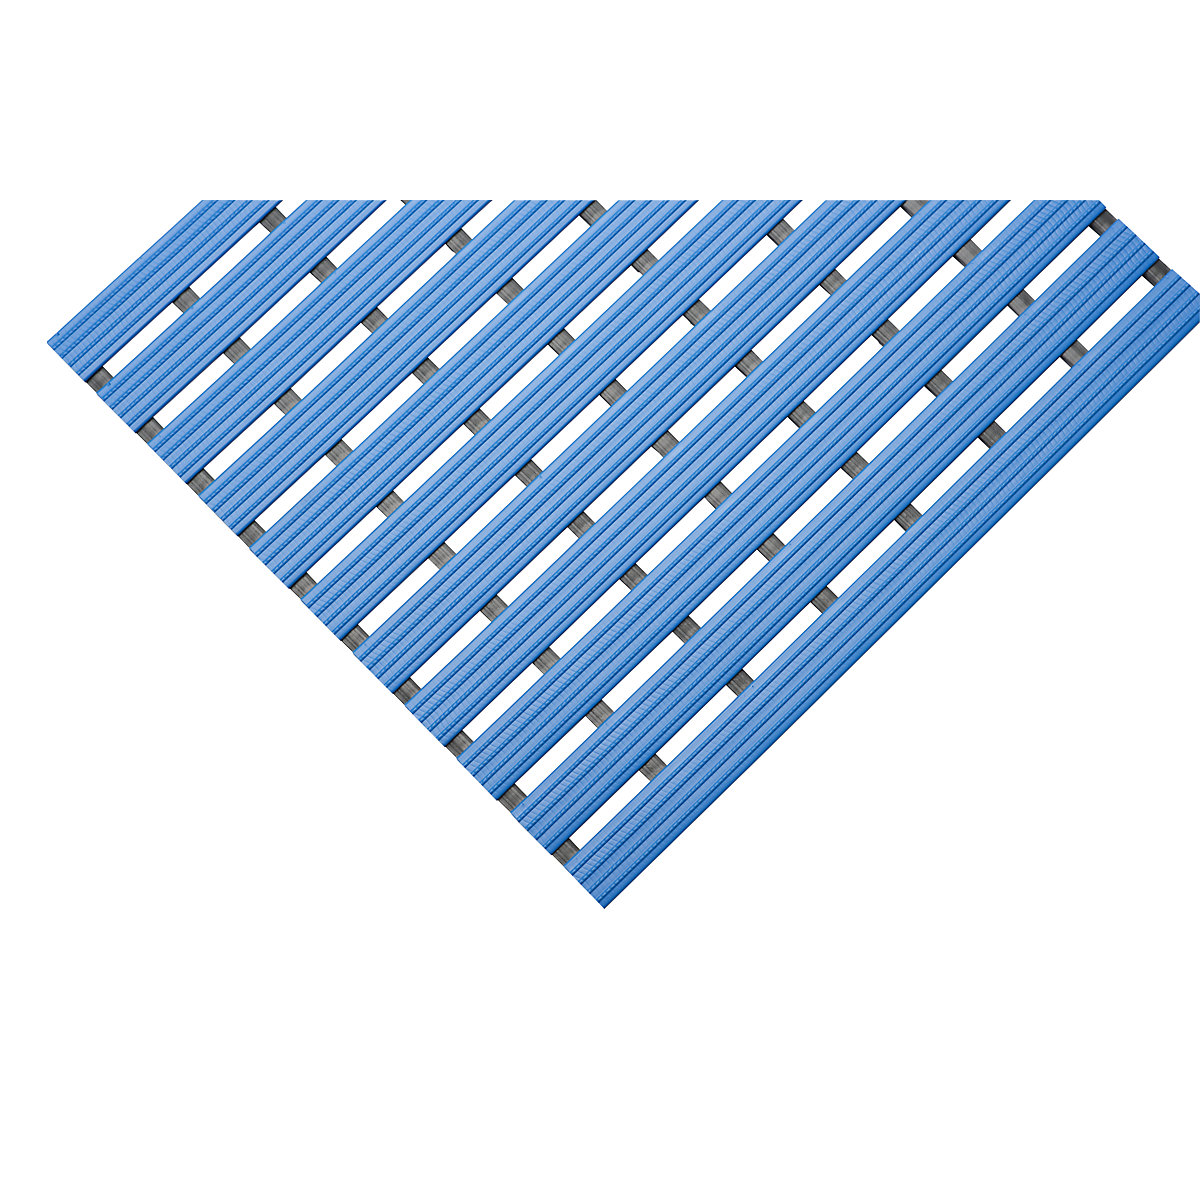 PVC-profilú szőnyeg, folyóméterenként, csúszásmentes futófelület kemény PVC-ből, szélesség 600 mm, kék-10